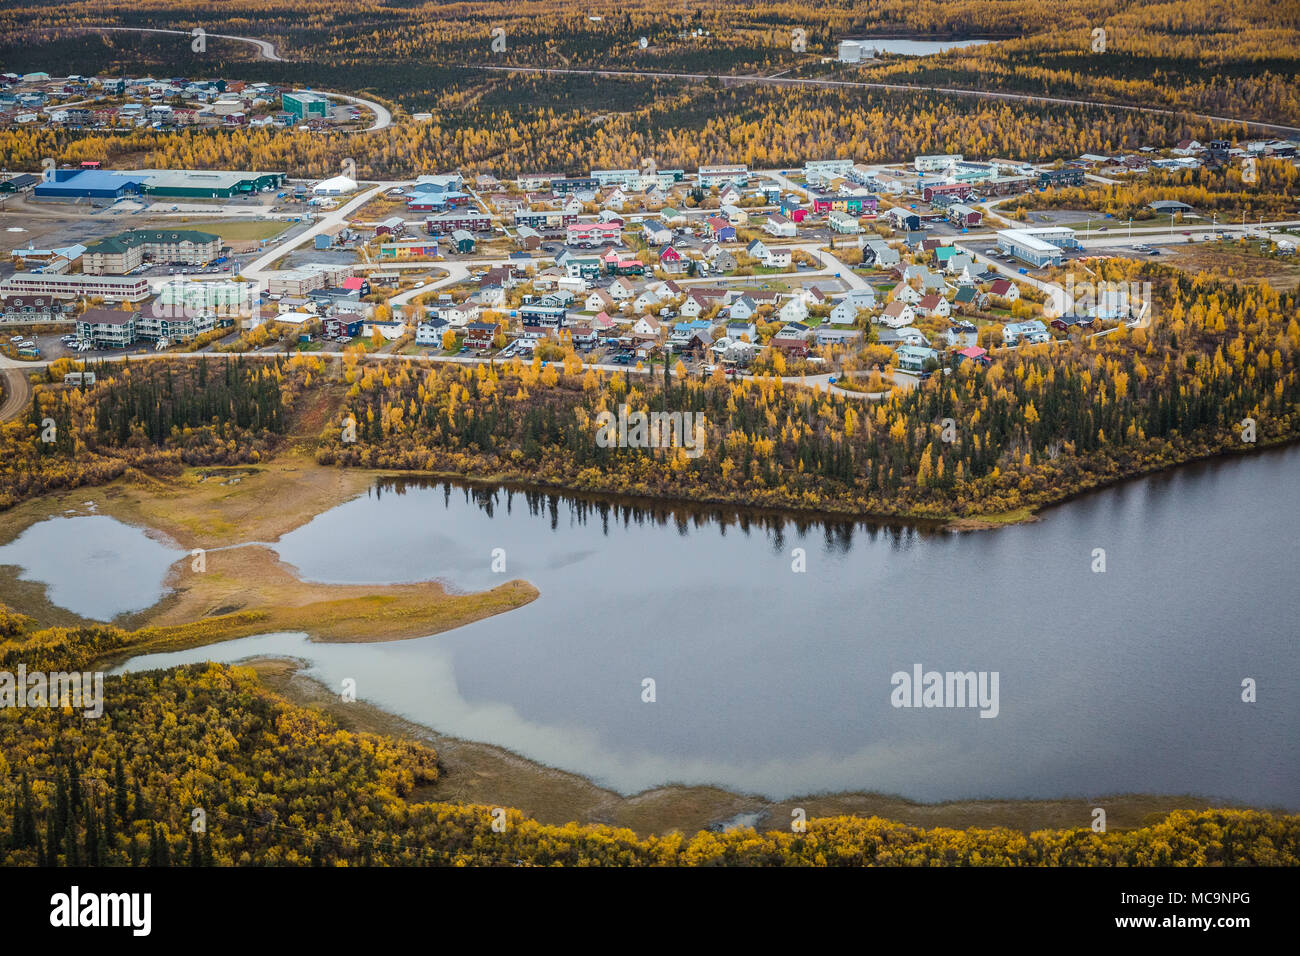 Vue aérienne de la ville d'Inuvik à l'automne, à 200km au nord du cercle arctique, Territoires du Nord-Ouest, Canada. Banque D'Images